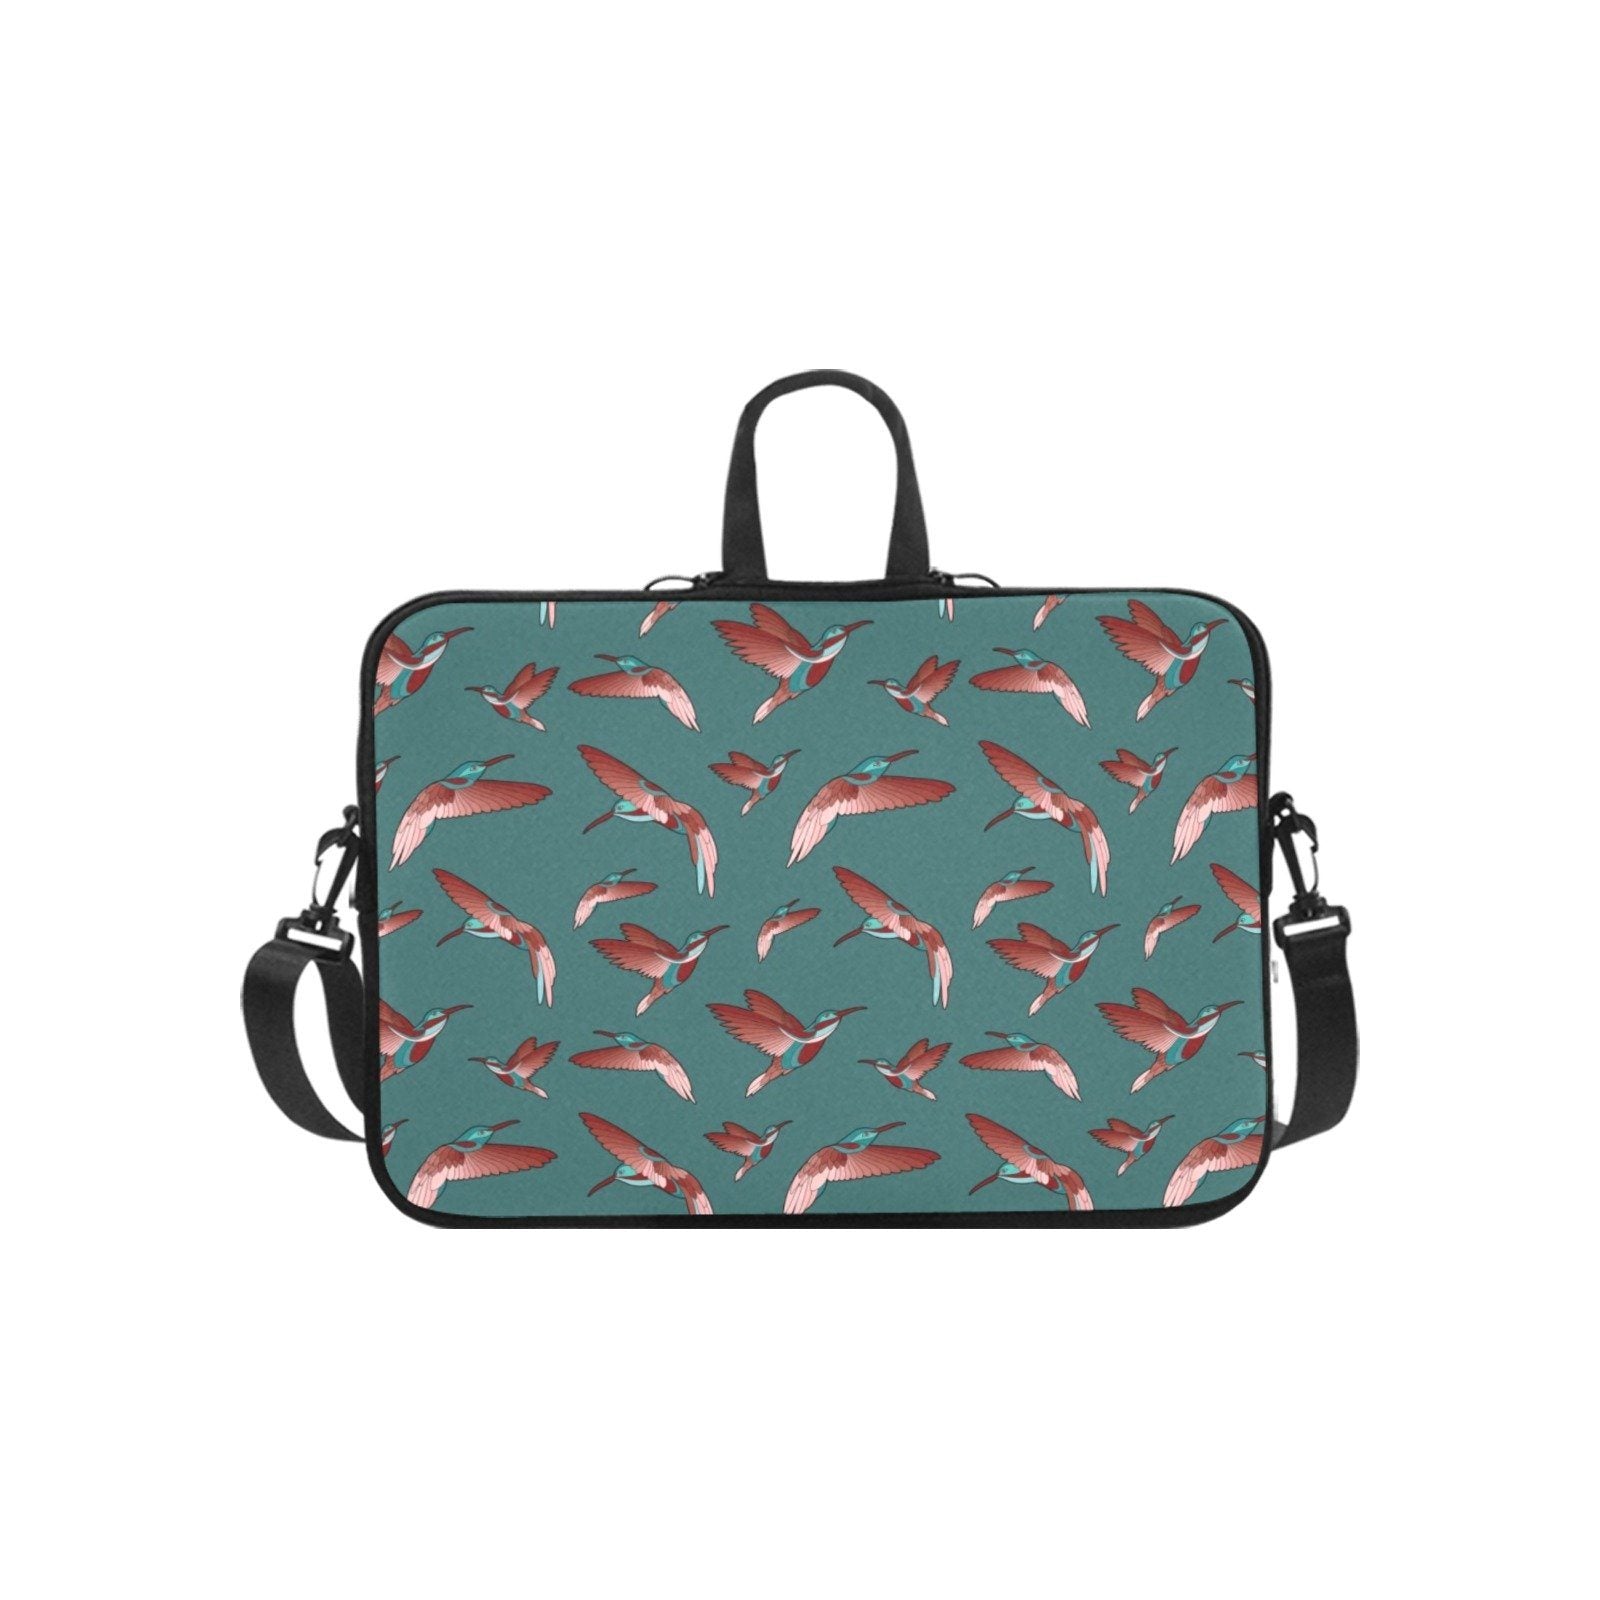 Red Swift Turquoise Laptop Handbags 17" bag e-joyer 